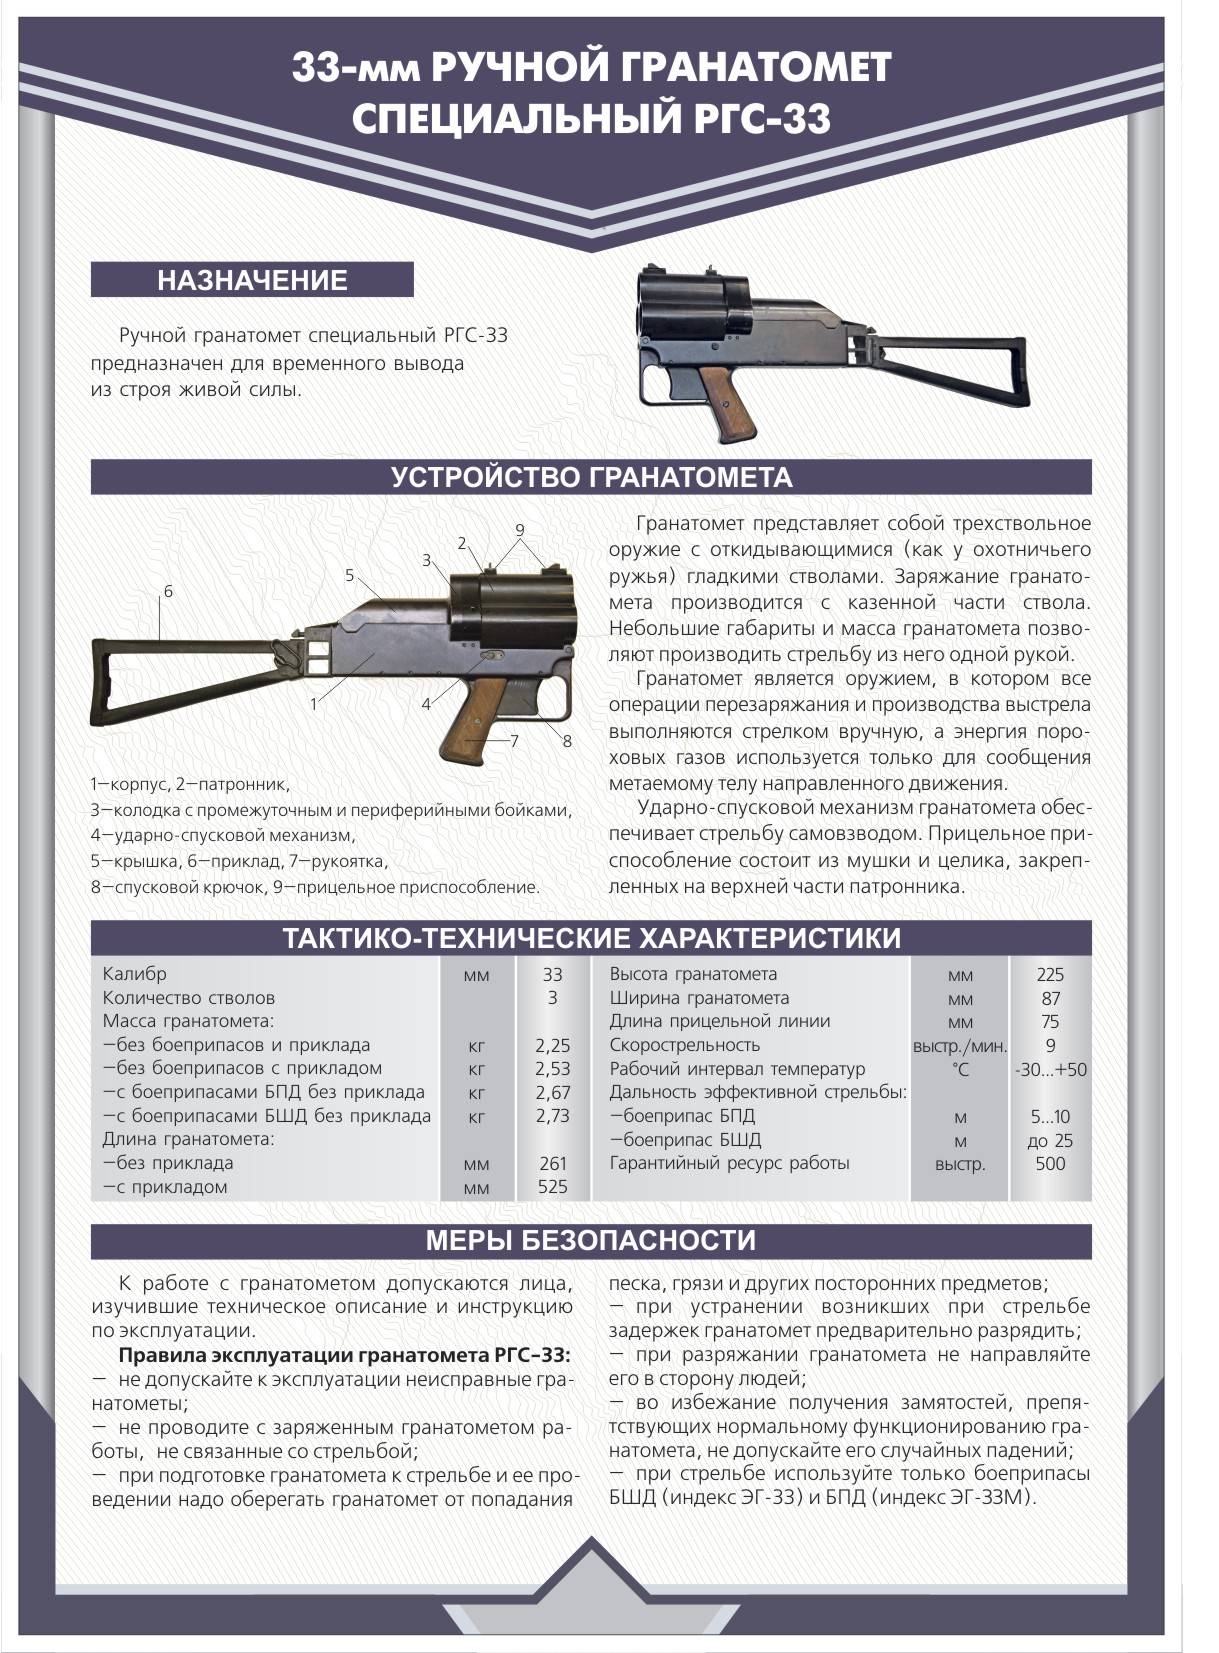 Бесшумное оружие (винтовка снайперская специальная «винторез»)